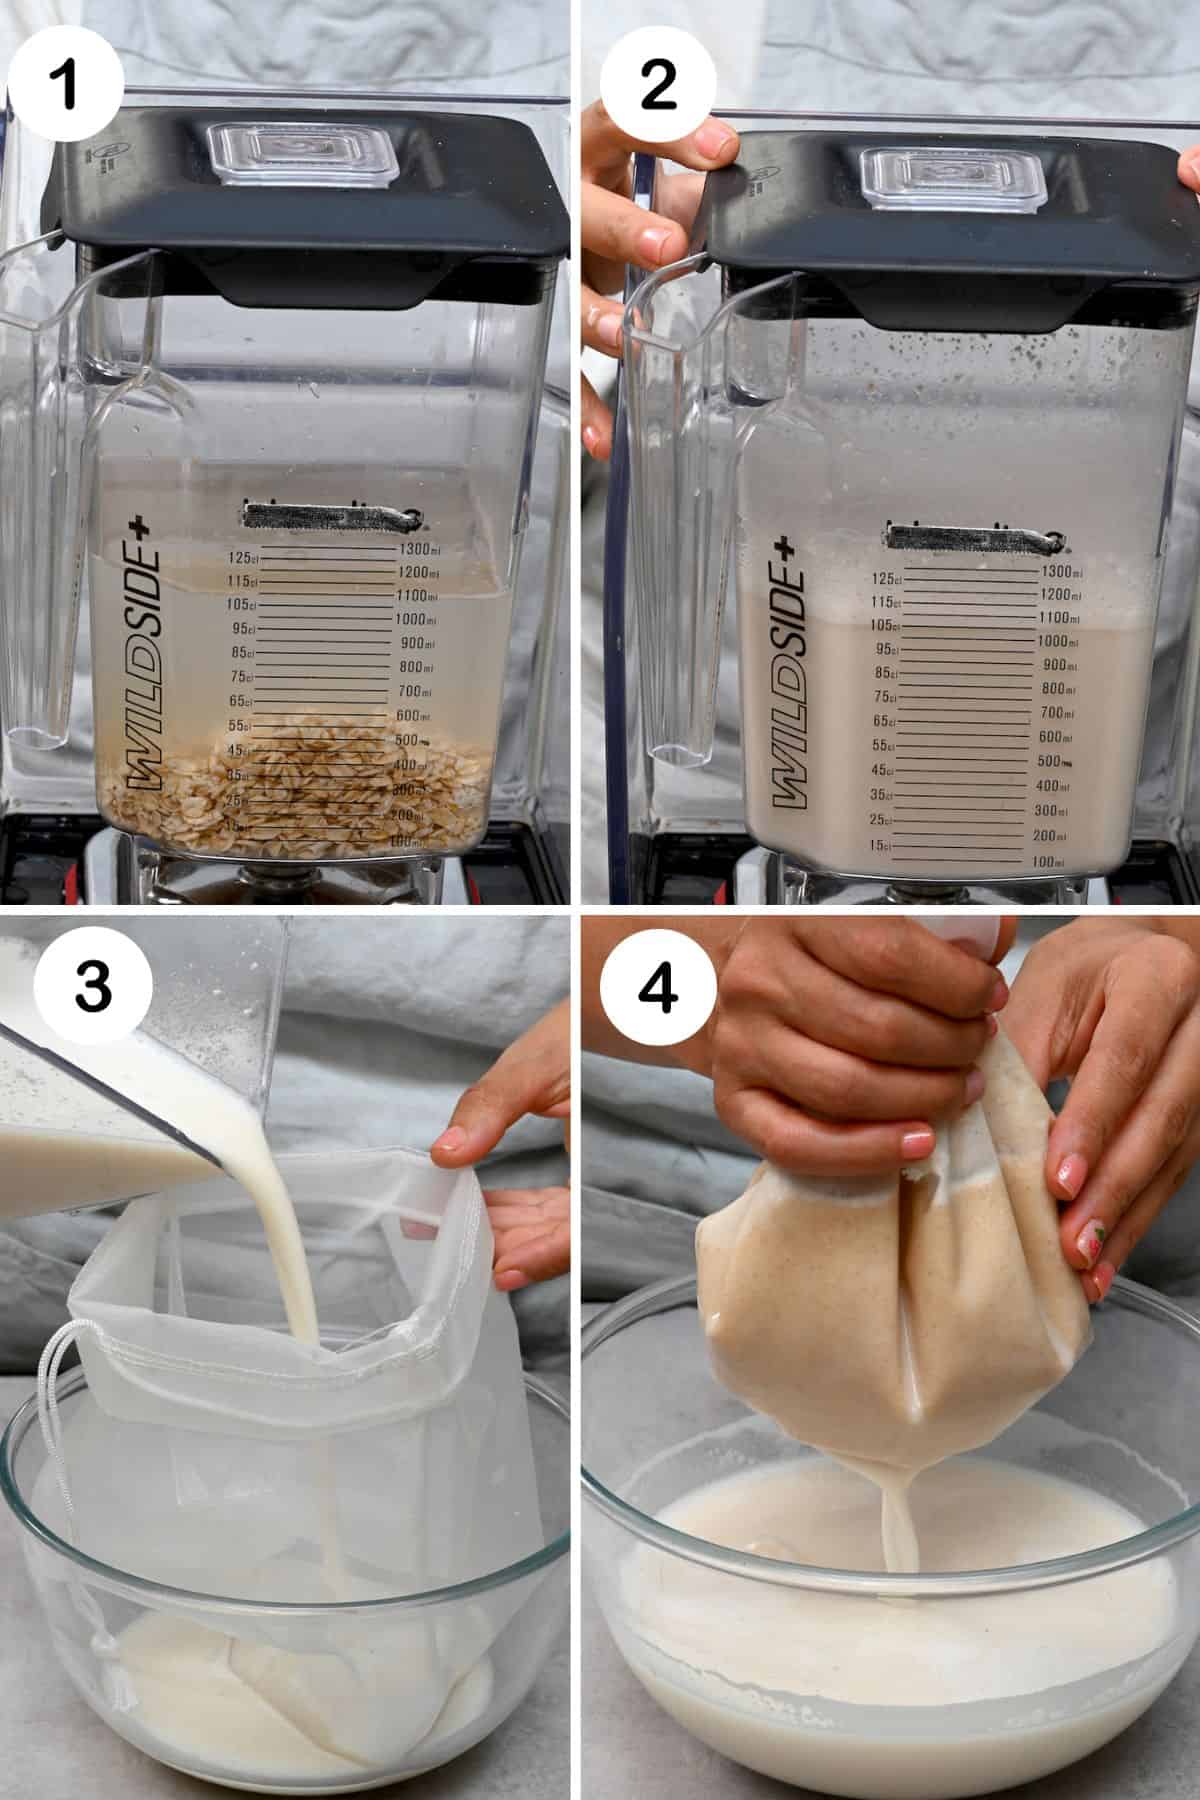 Steps for making oat milk